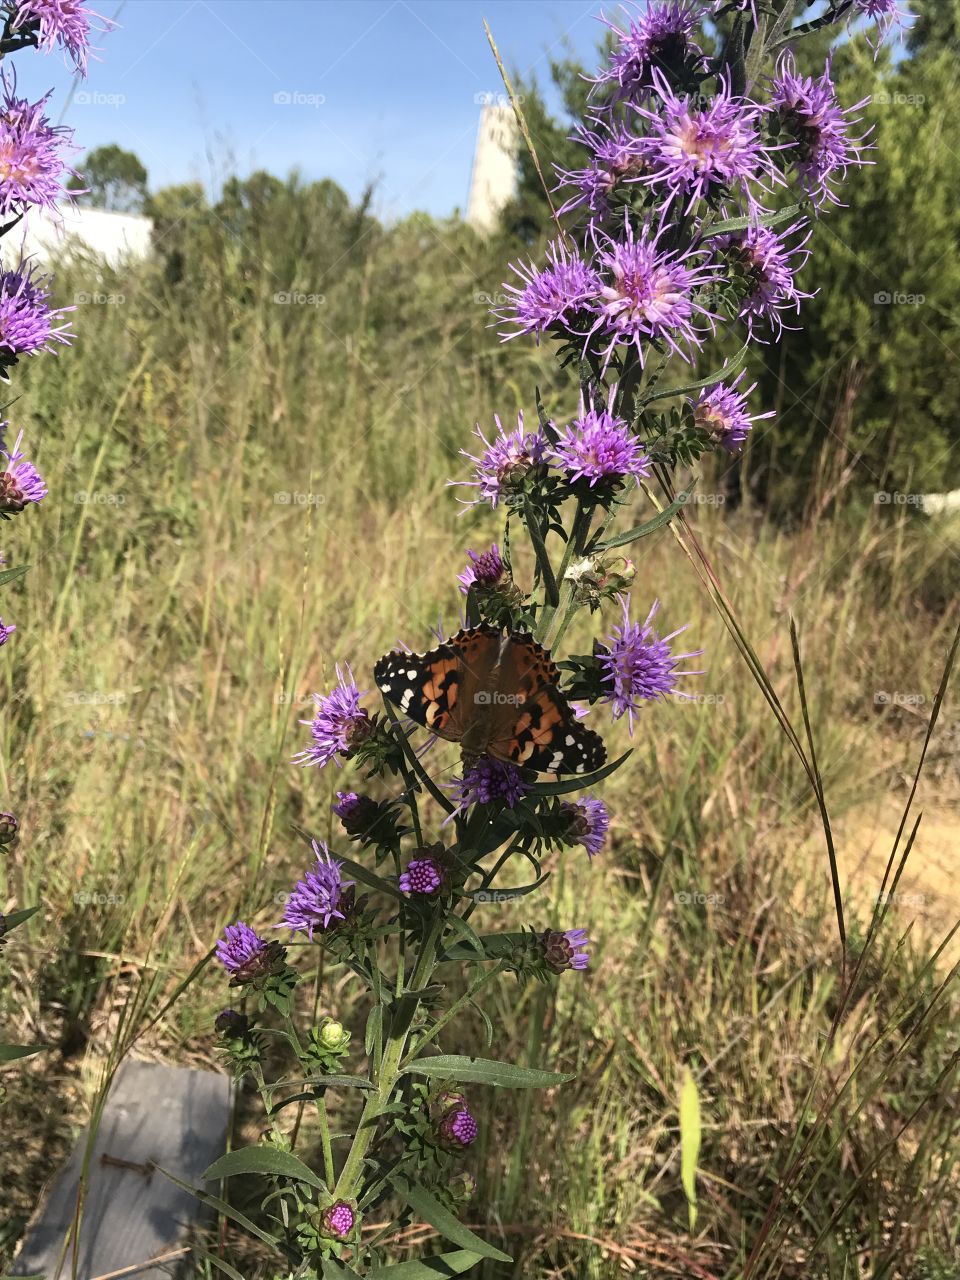 Butterfly & purple 